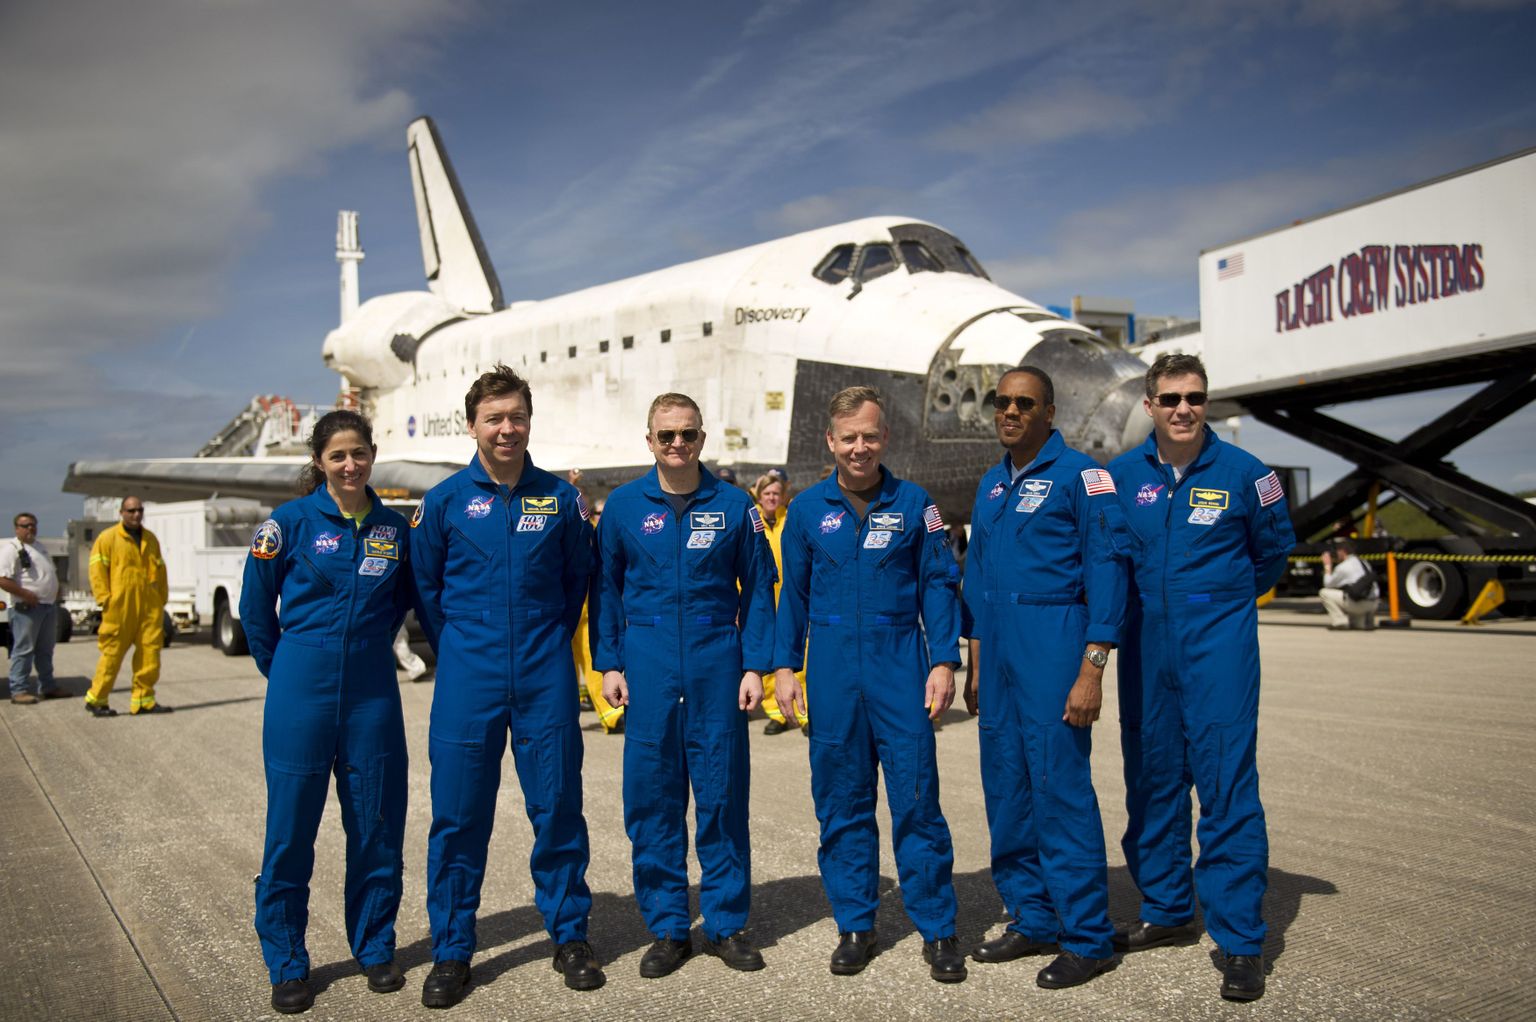 Missiooni STS-133 meeskonnaliimed (vasakult paremale) Nicole Stott, Michael Barratt, Eric Boe, Steve Lindsey, Alvin Drew ja Steve Bowen